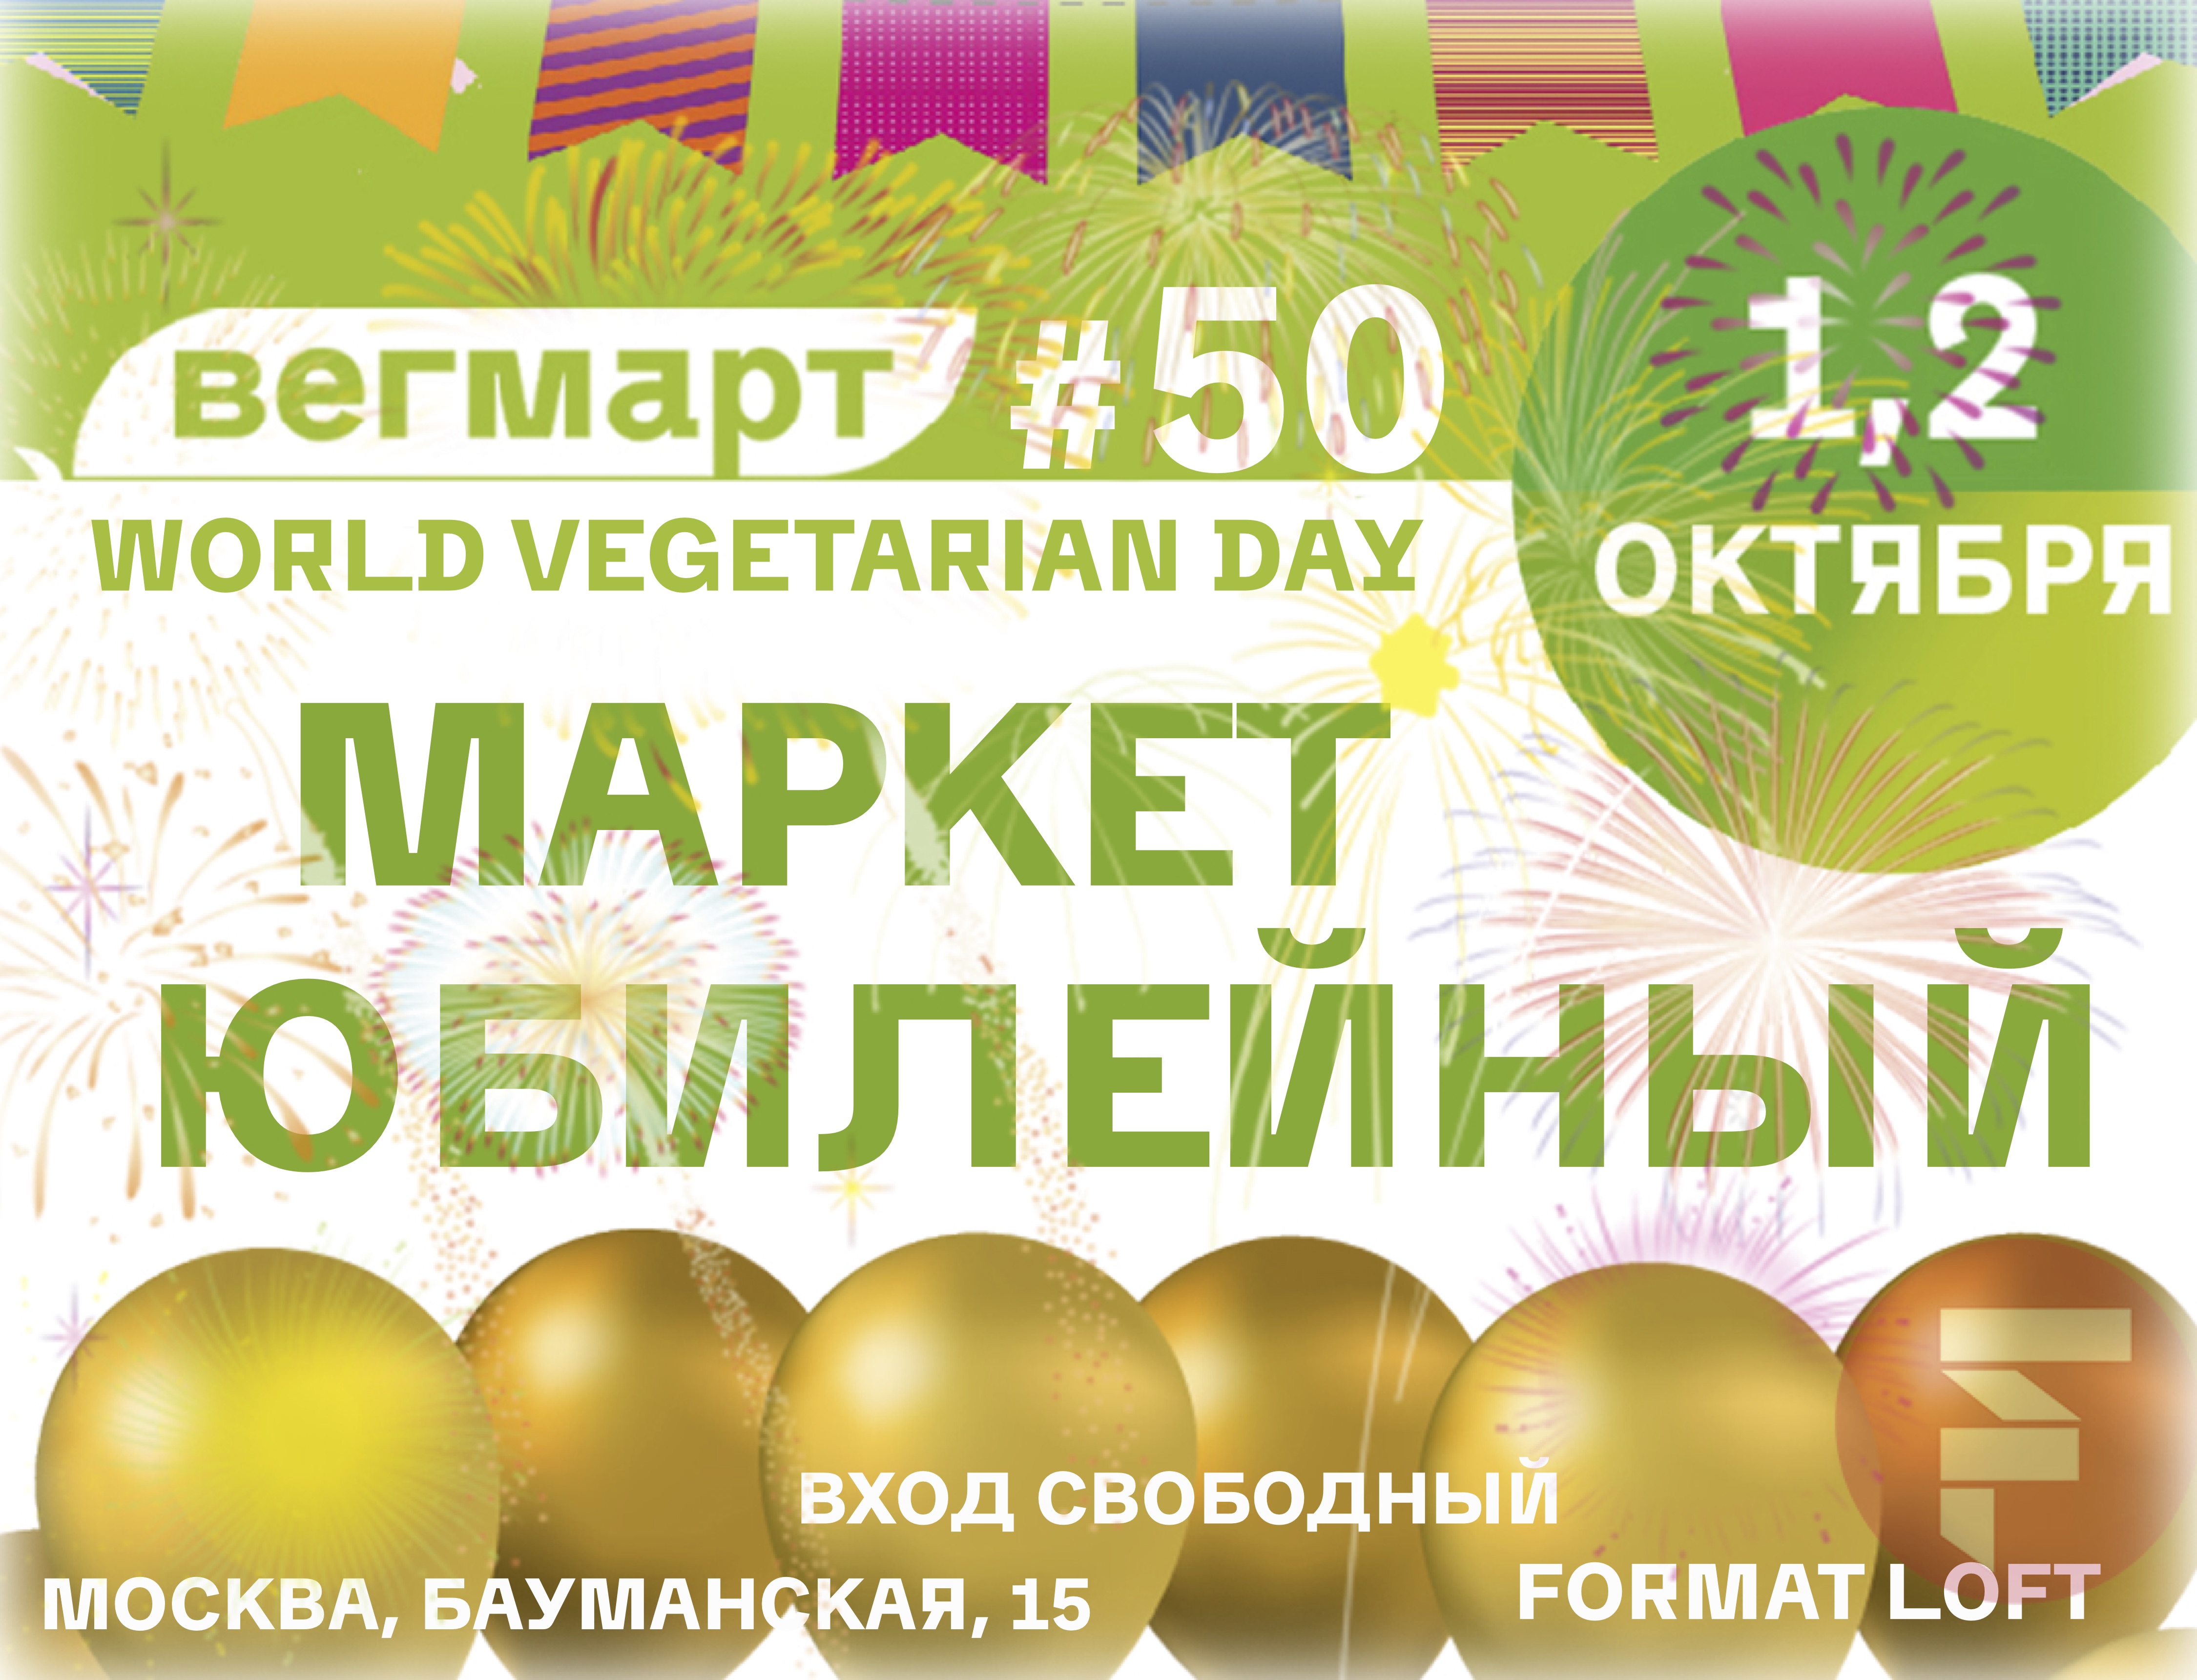 фото: Насладиться вкусной едой и хорошей компанией: в Москве пройдет юбилейный маркет Вегетарианского клуба ВегМарт